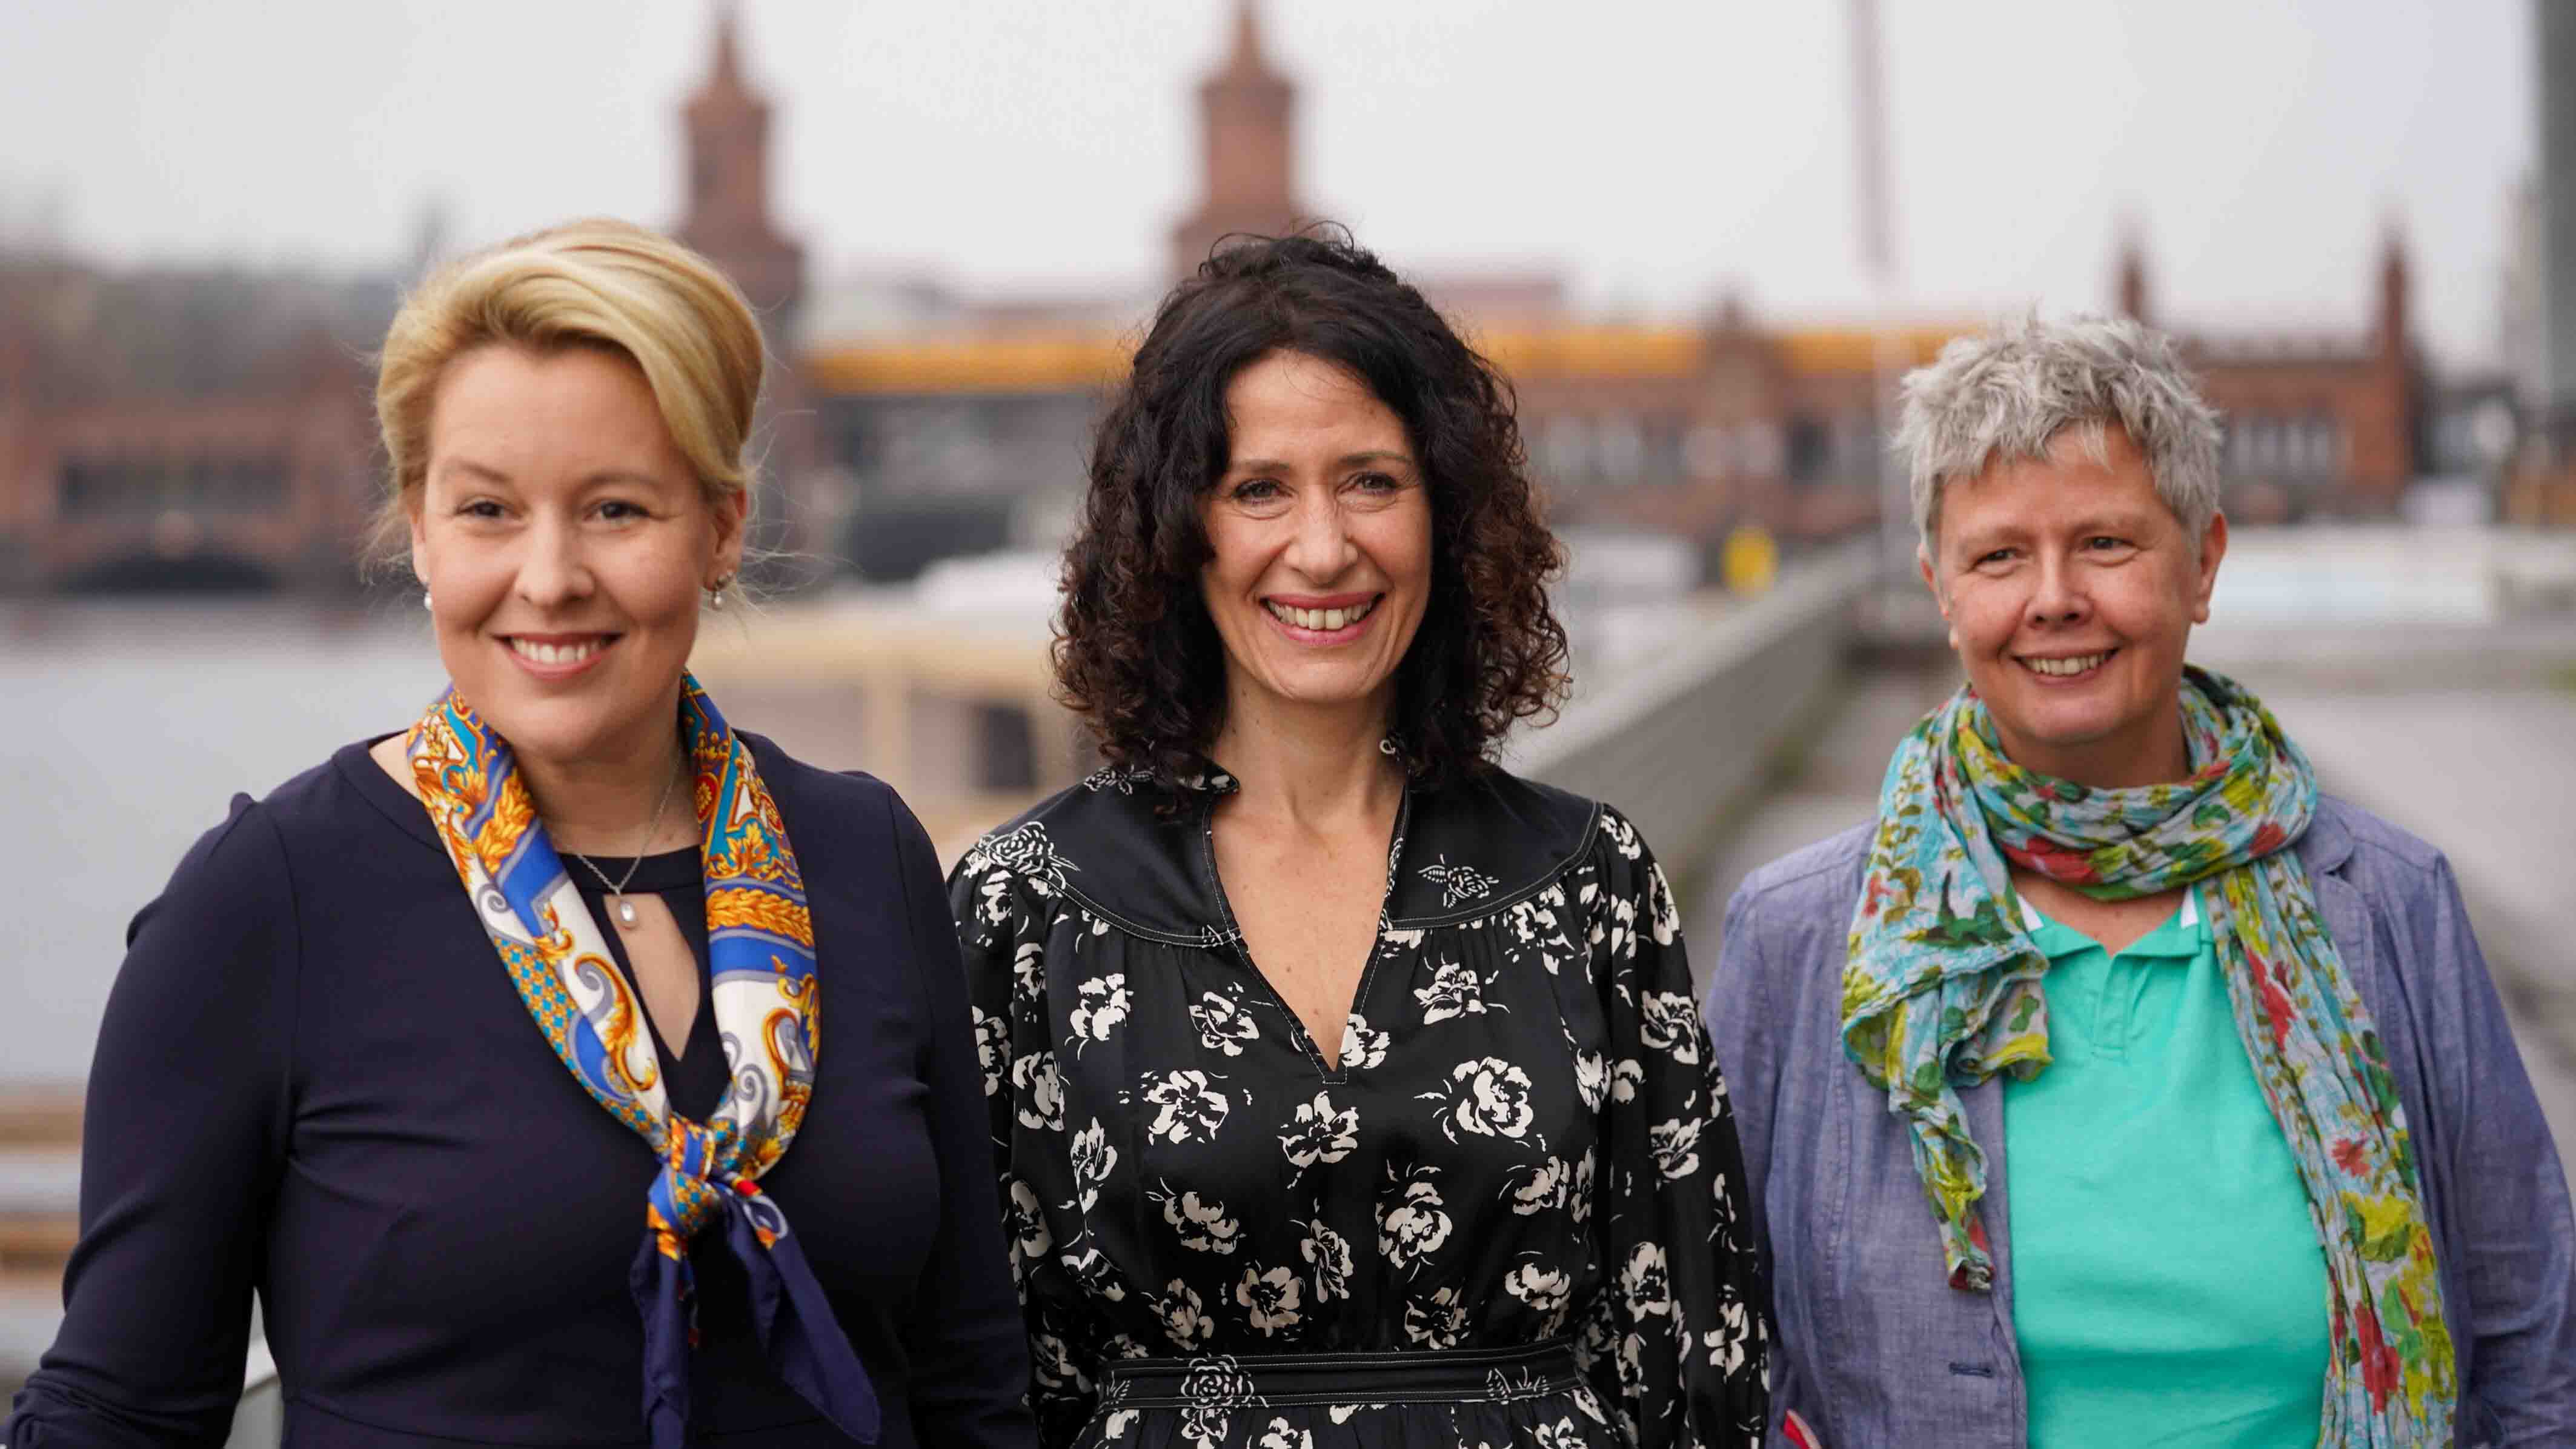 v.l. Franziska Giffey SPD, Bettina Jarasch B90/Die Grünen, Katina Schubert Die Linke (Bild: imago images/Reuhl)